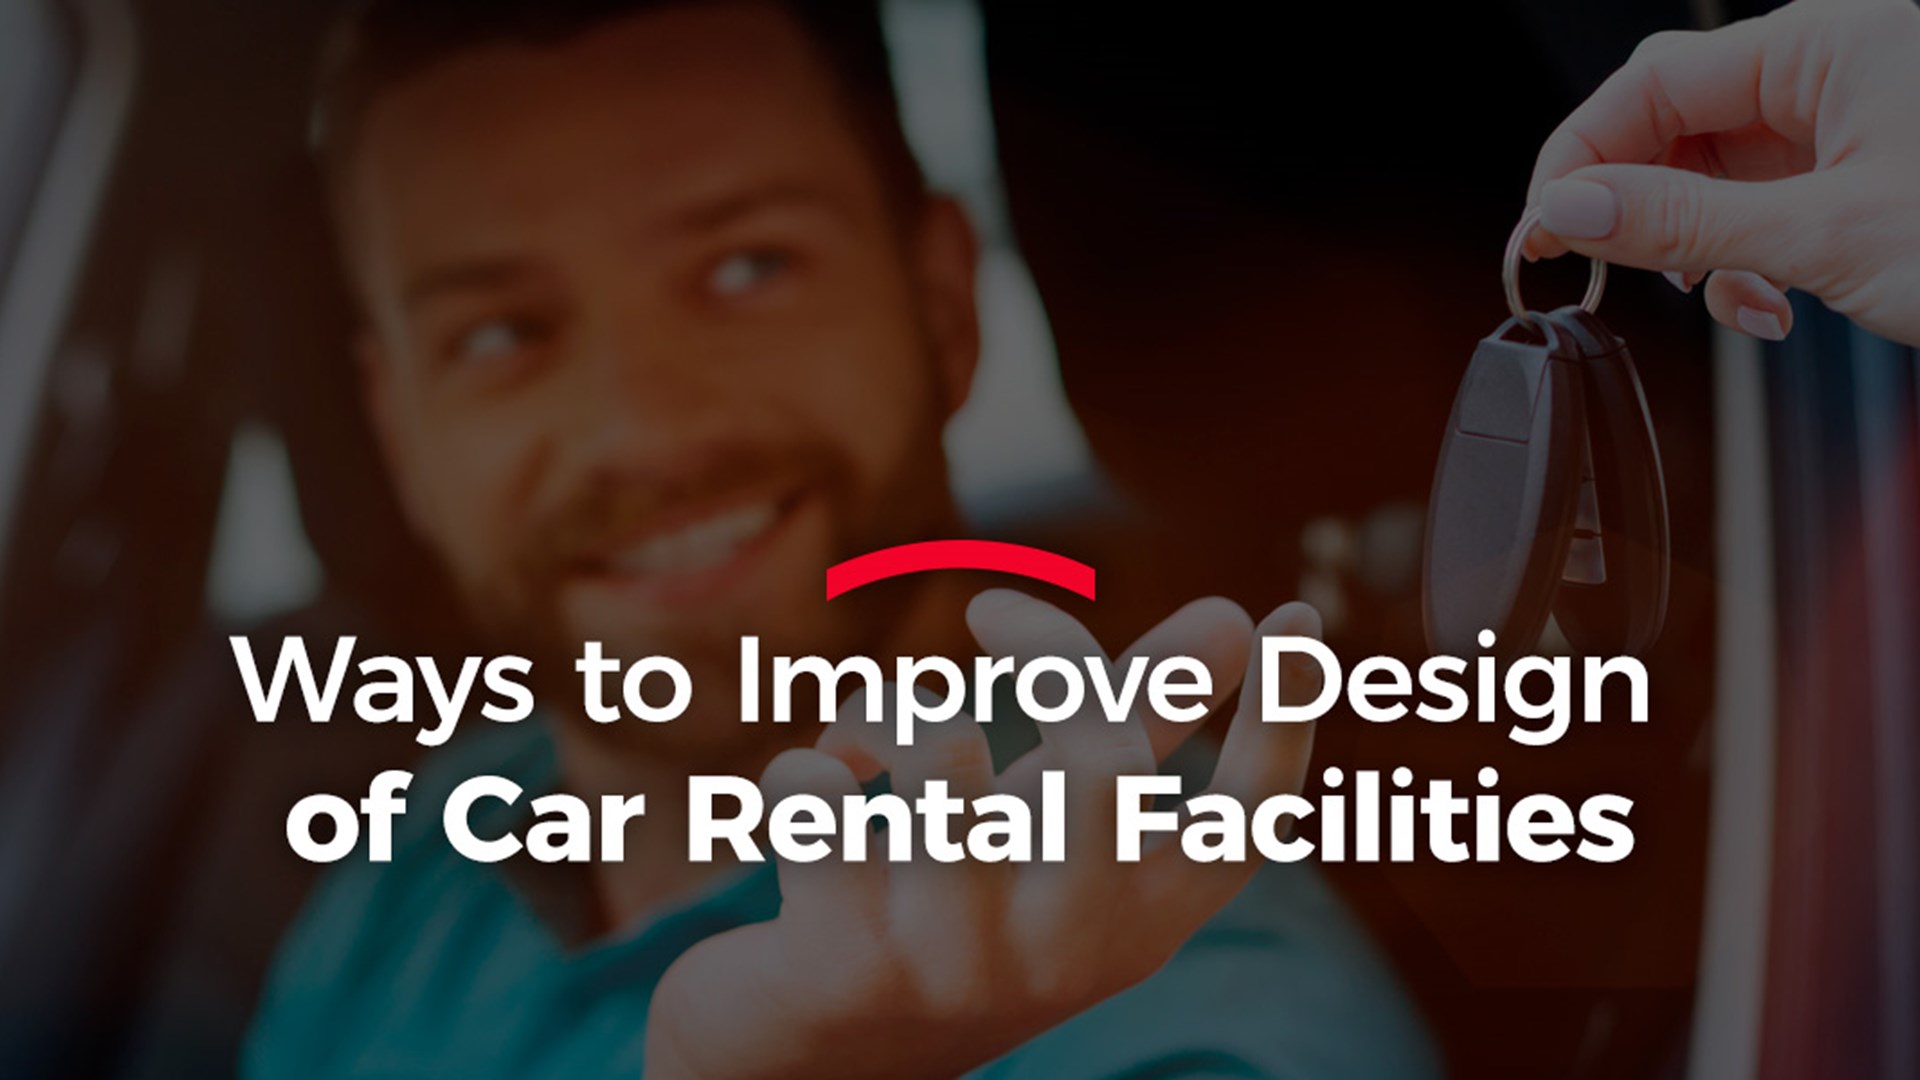 Ways to Improve Design of Car Rental Facilities